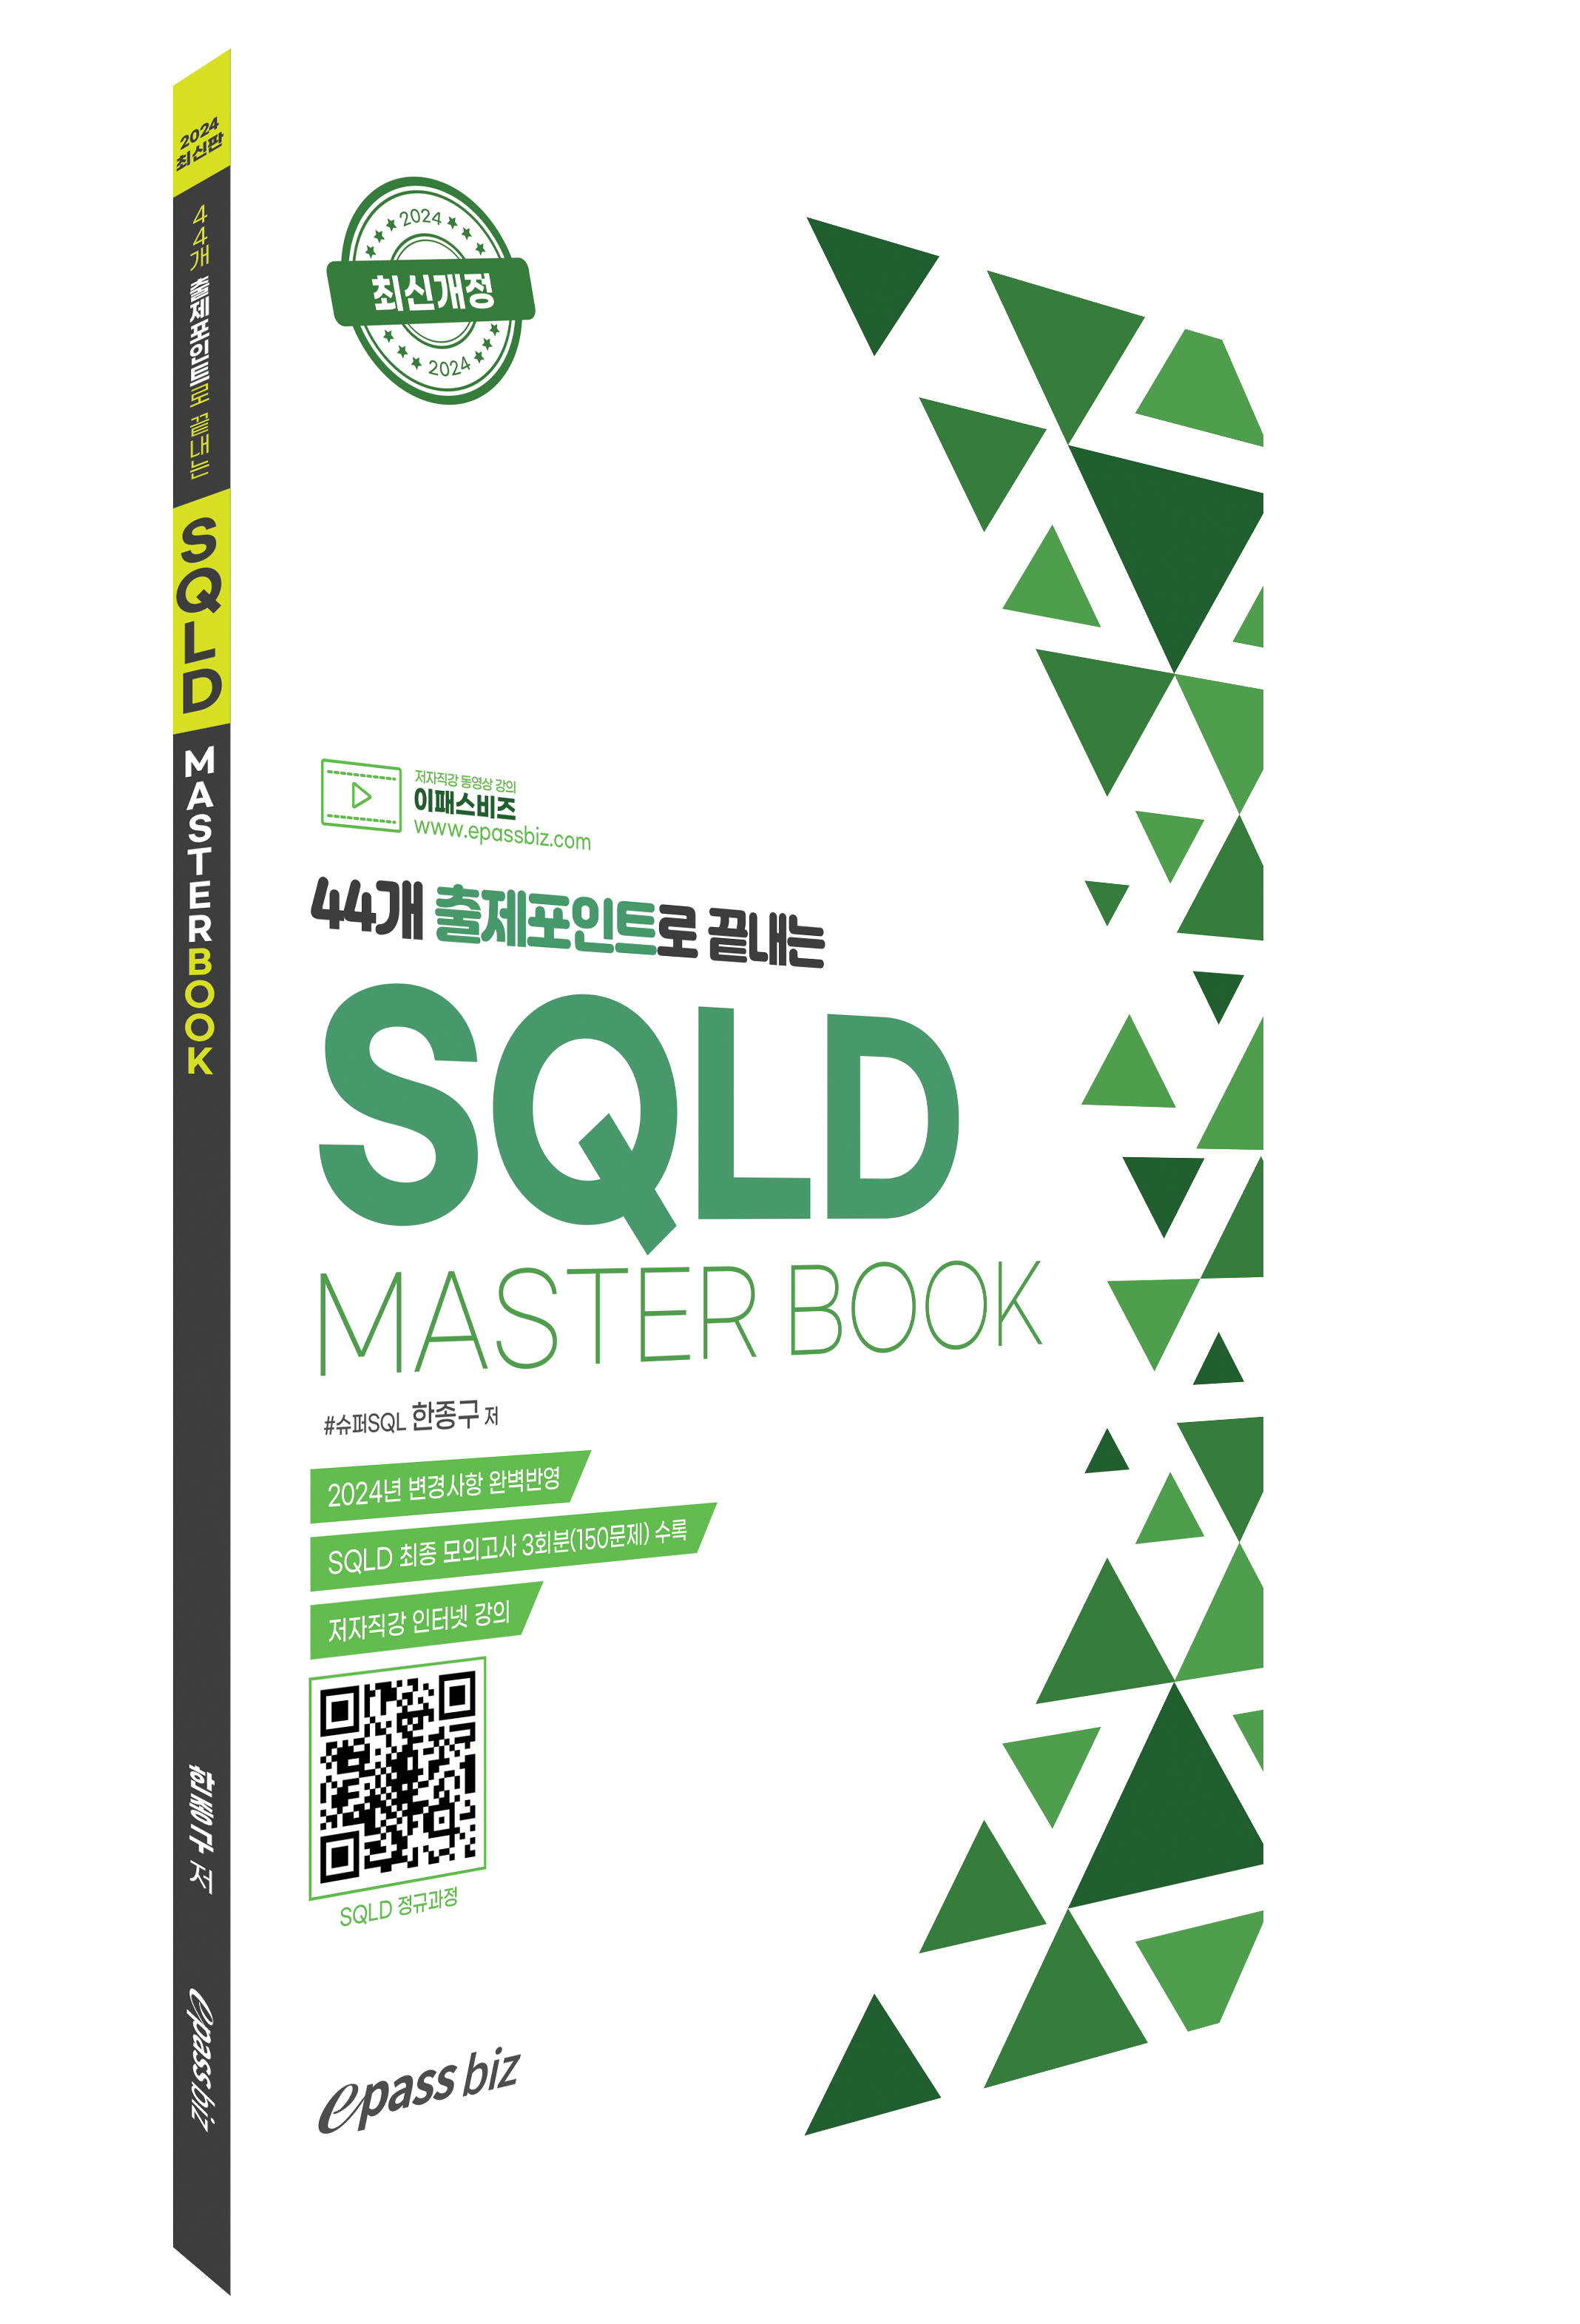 44개 출제포인트로 끝내는 SQLD Masterbook 이미지